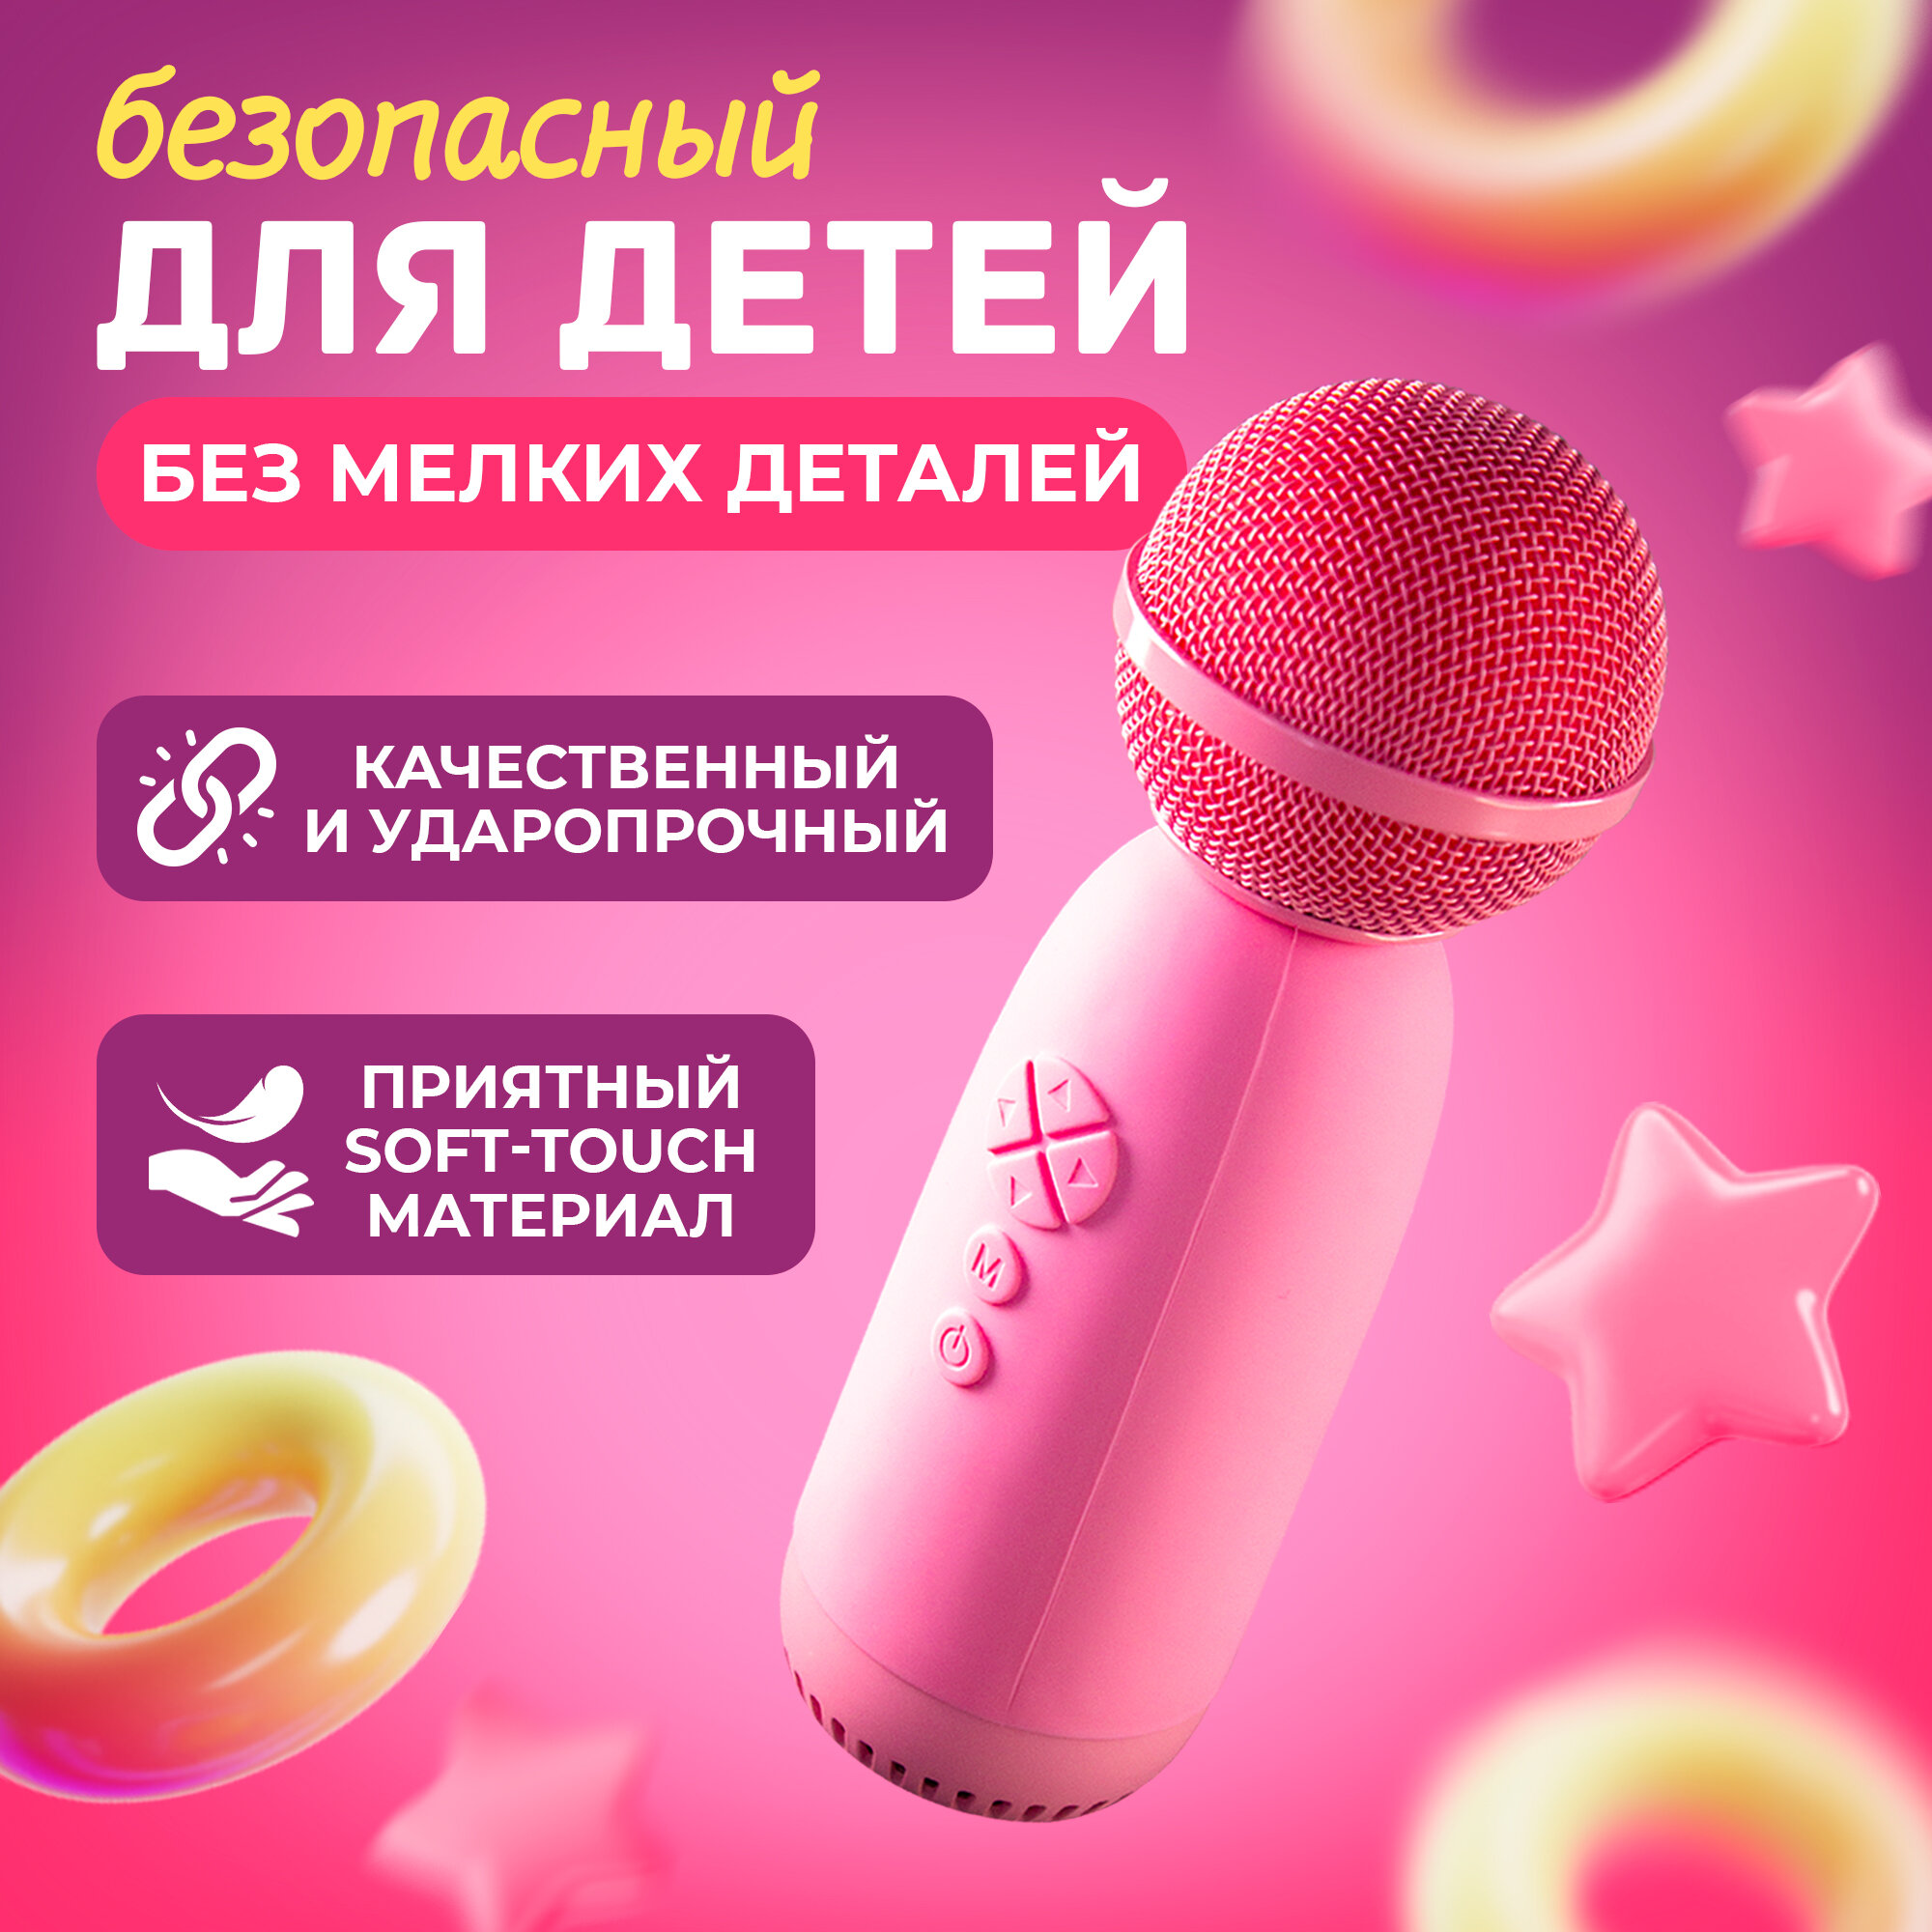 Беспроводной микрофон караоке для телефона, AMFOX, ASP-070, домашнее караоке, детское, студийная колонка для пения, блютуз, розовый